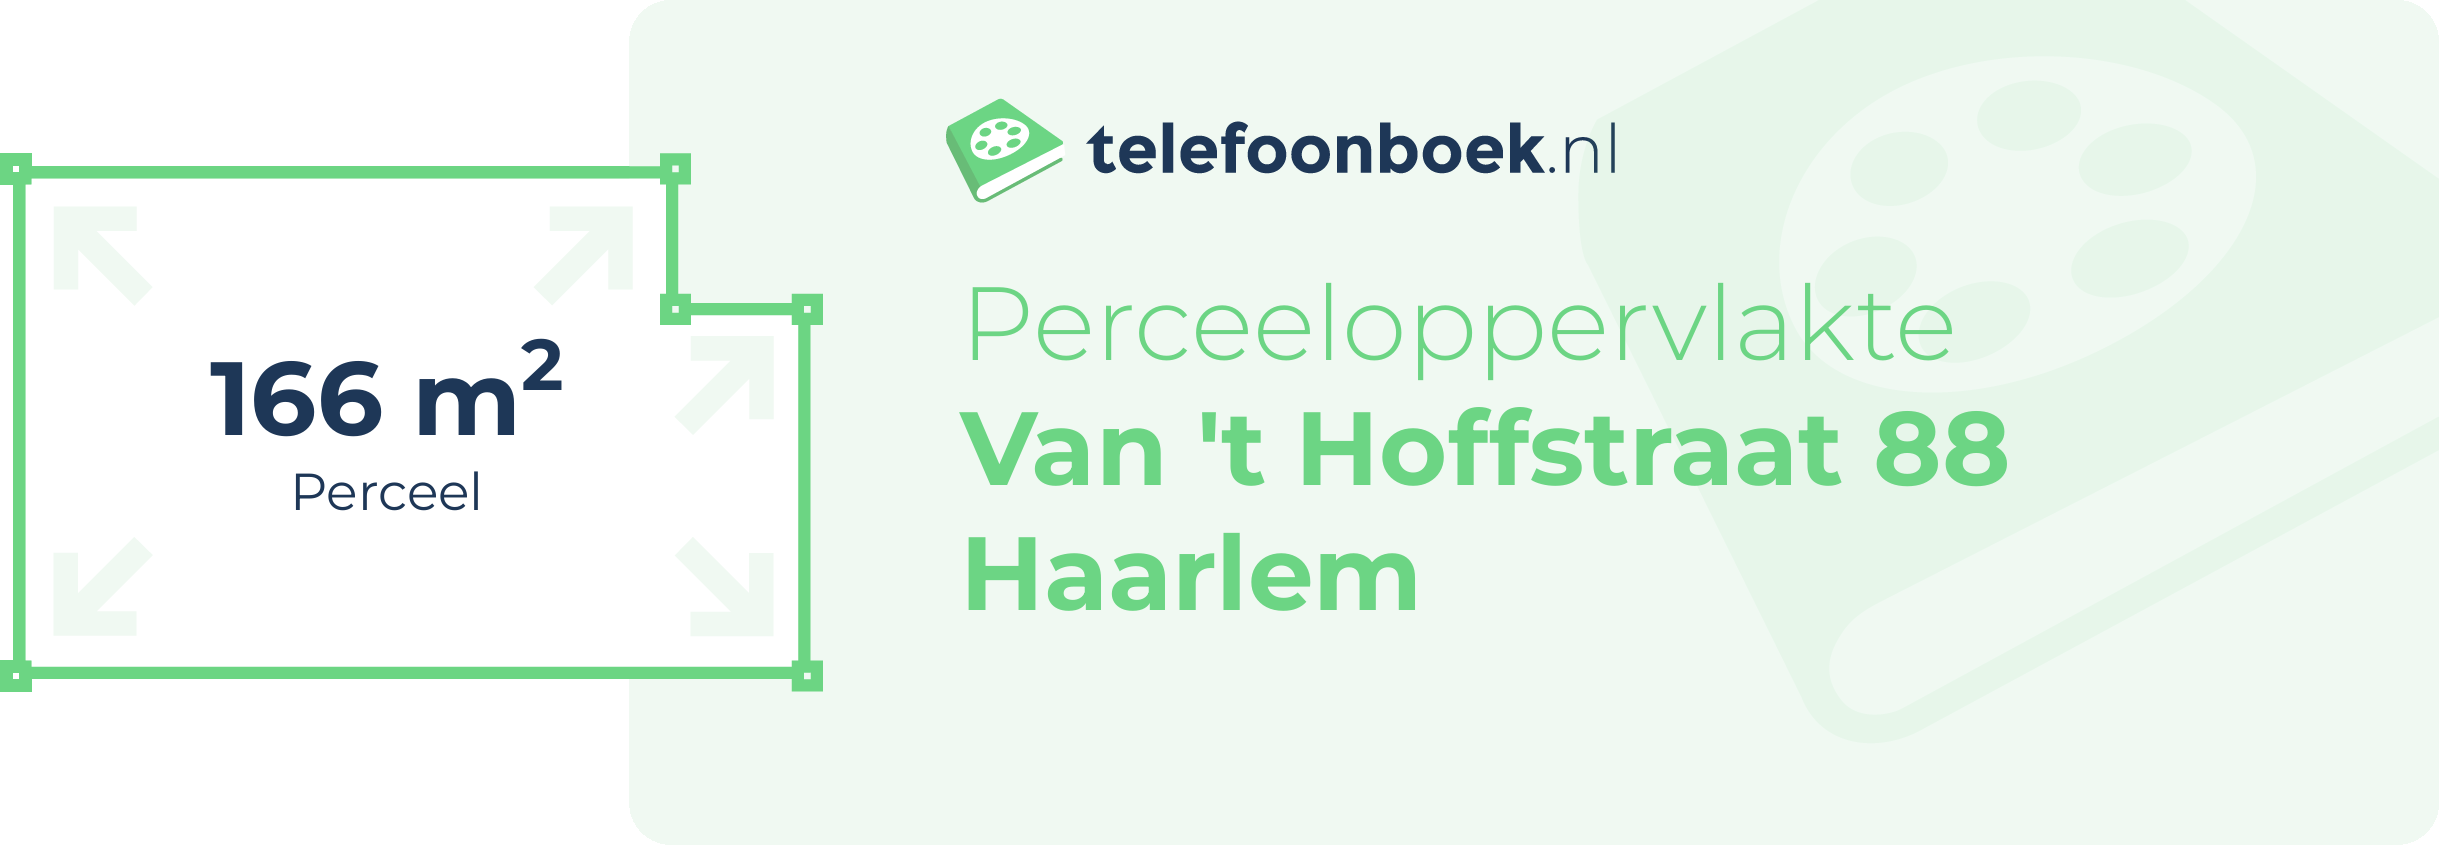 Perceeloppervlakte Van 't Hoffstraat 88 Haarlem